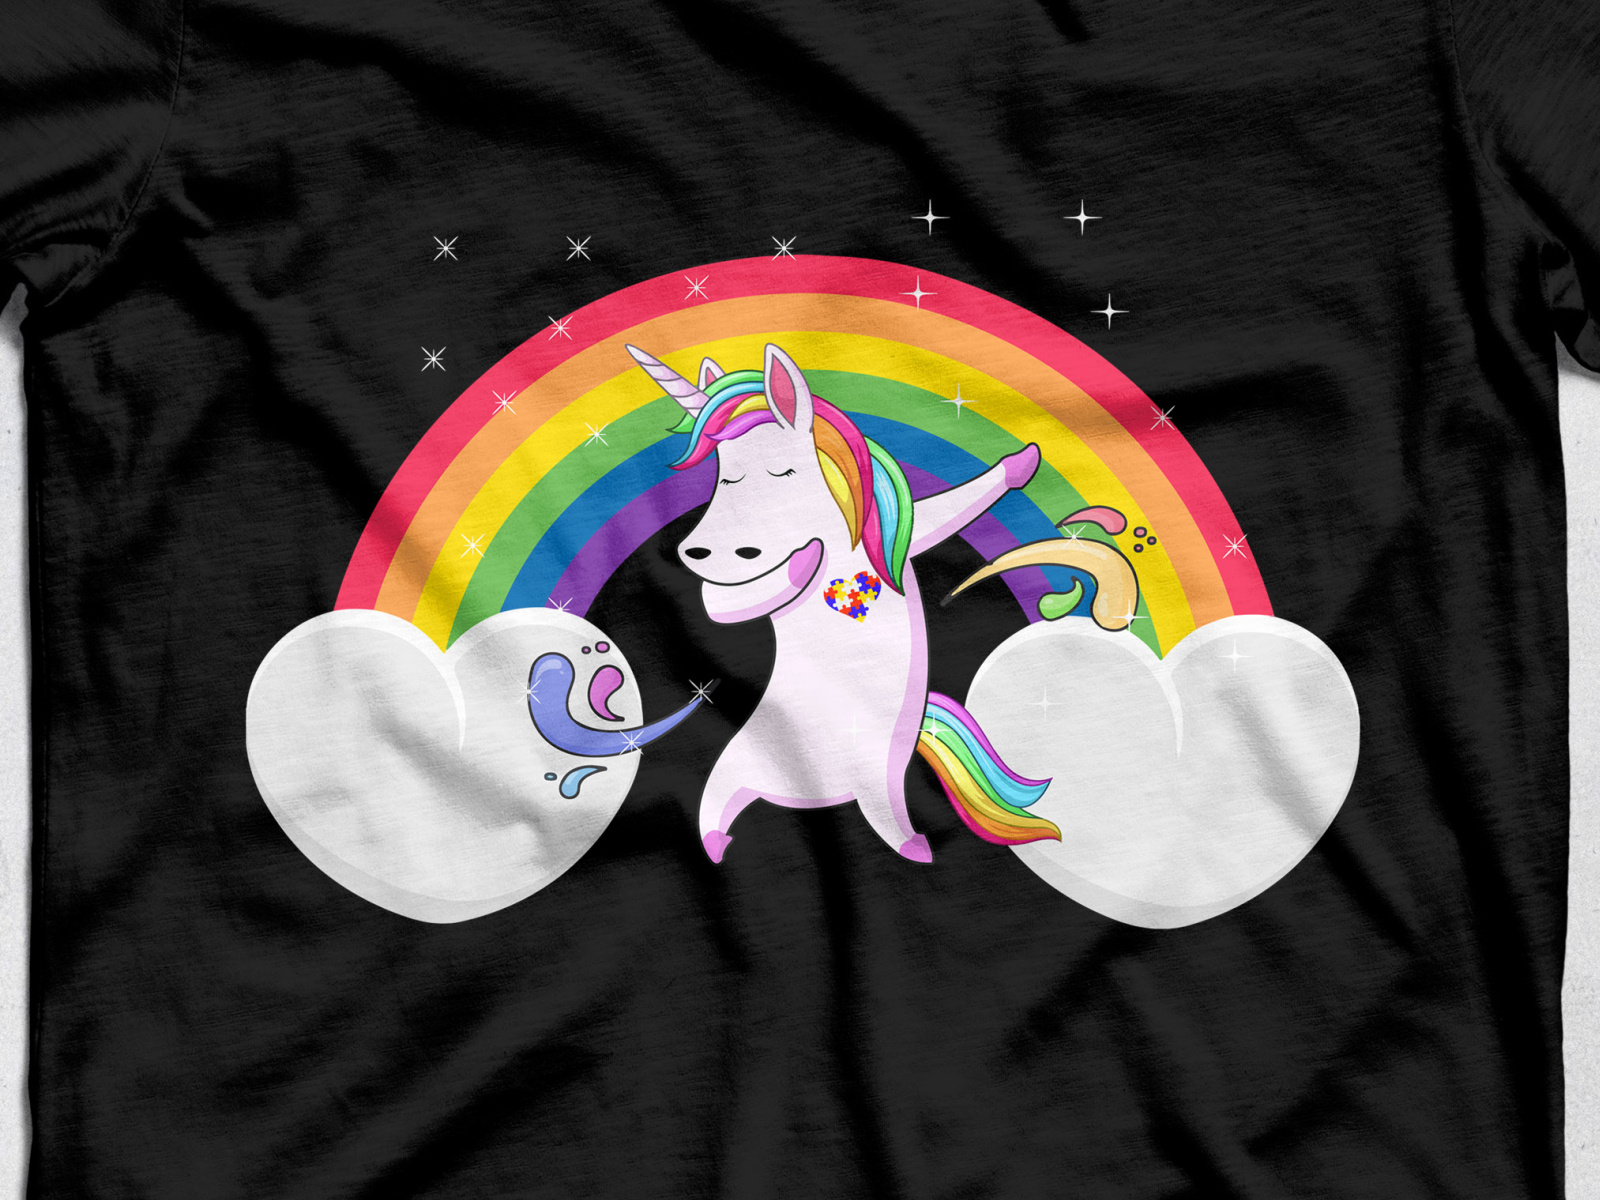 unicorn birthday shirt template